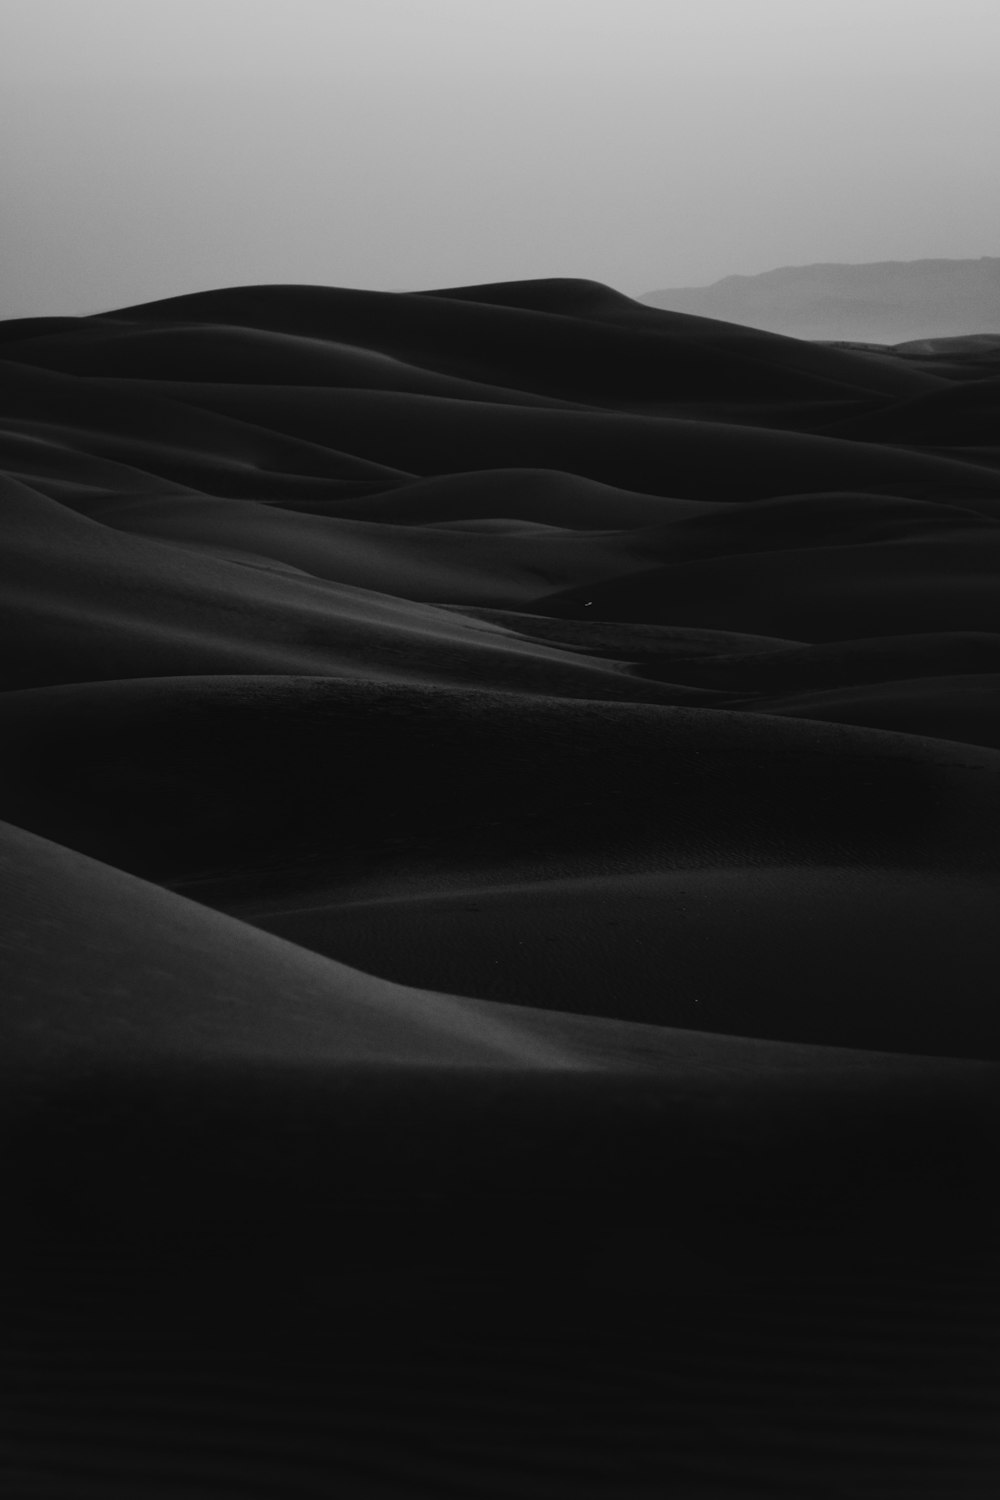 foto in scala di grigi del deserto